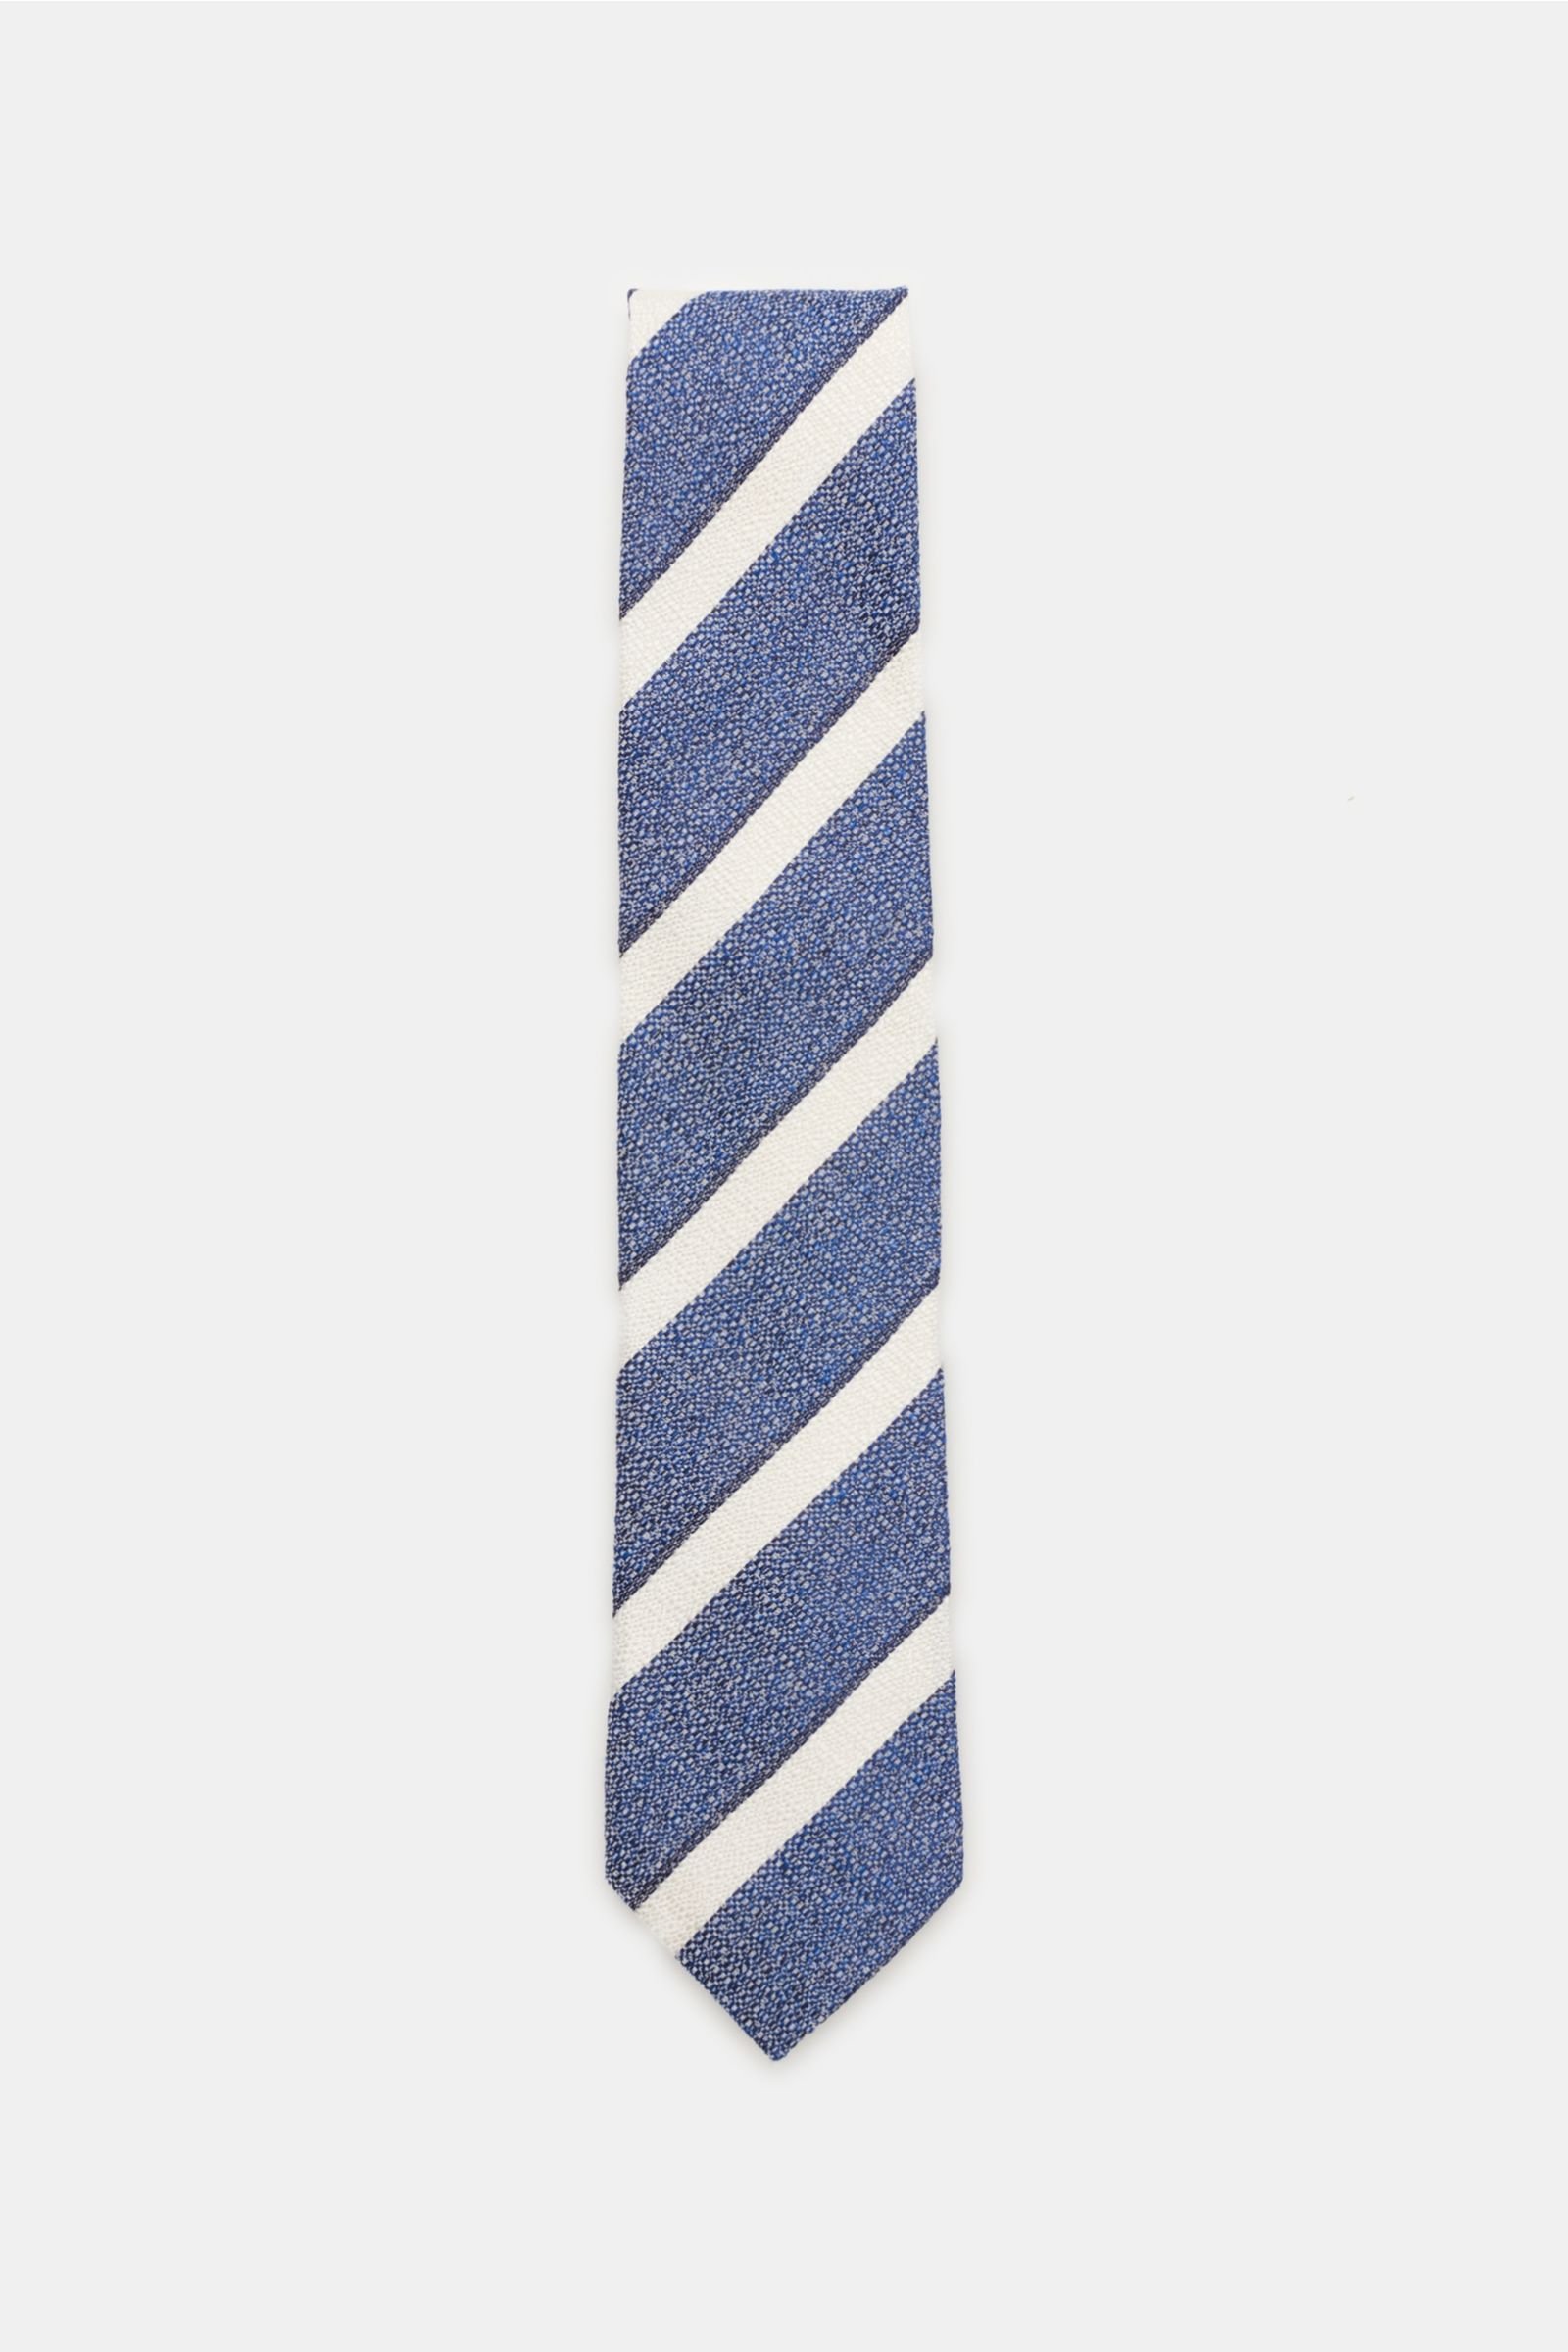 Tie dark blue/white striped